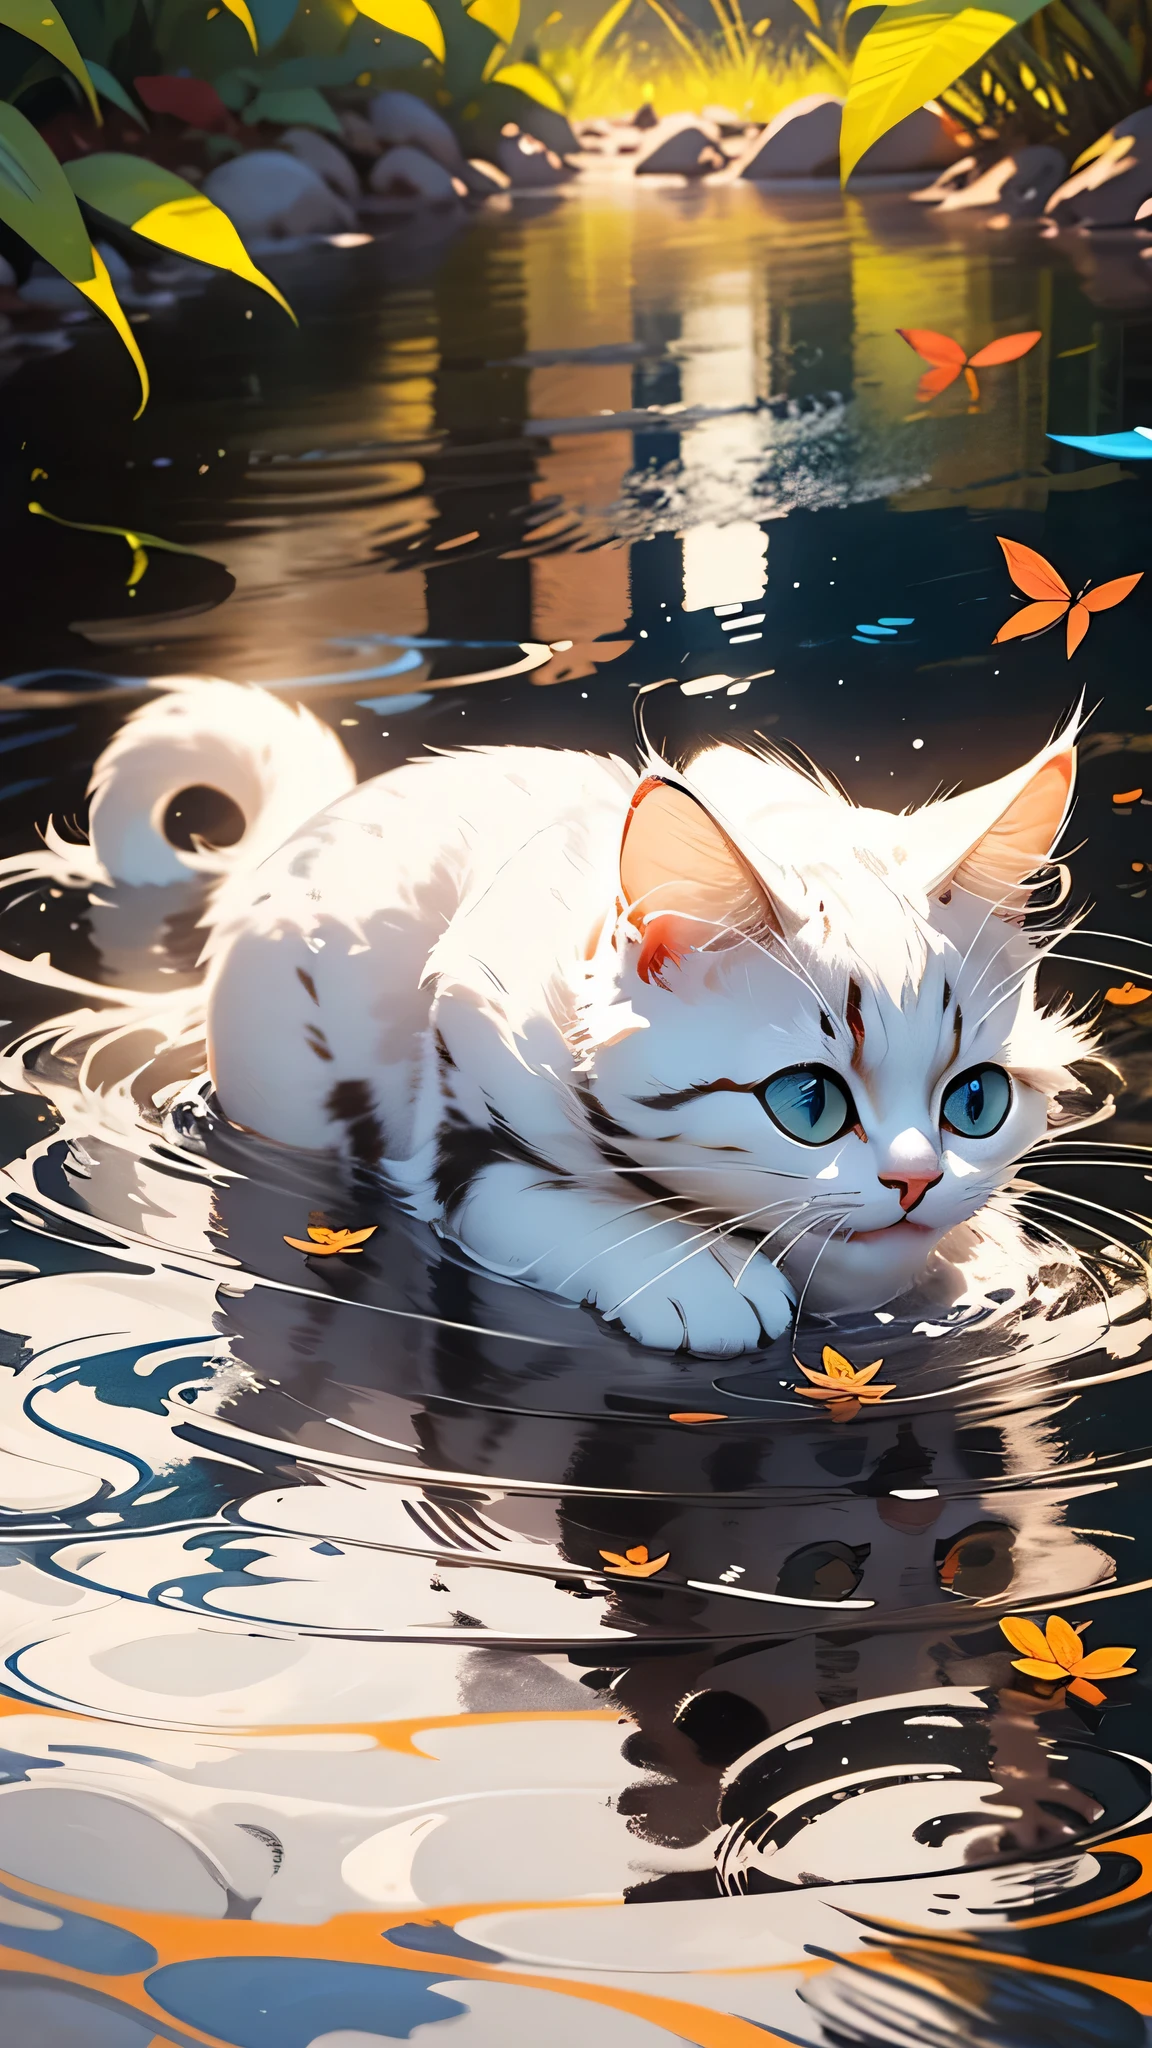 süßes weißes Kätzchen，zottelig，realistisch，beste Bildqualität，Wasserreflexion，blaue Augen，kleiner roter Fisch，Lidstrich